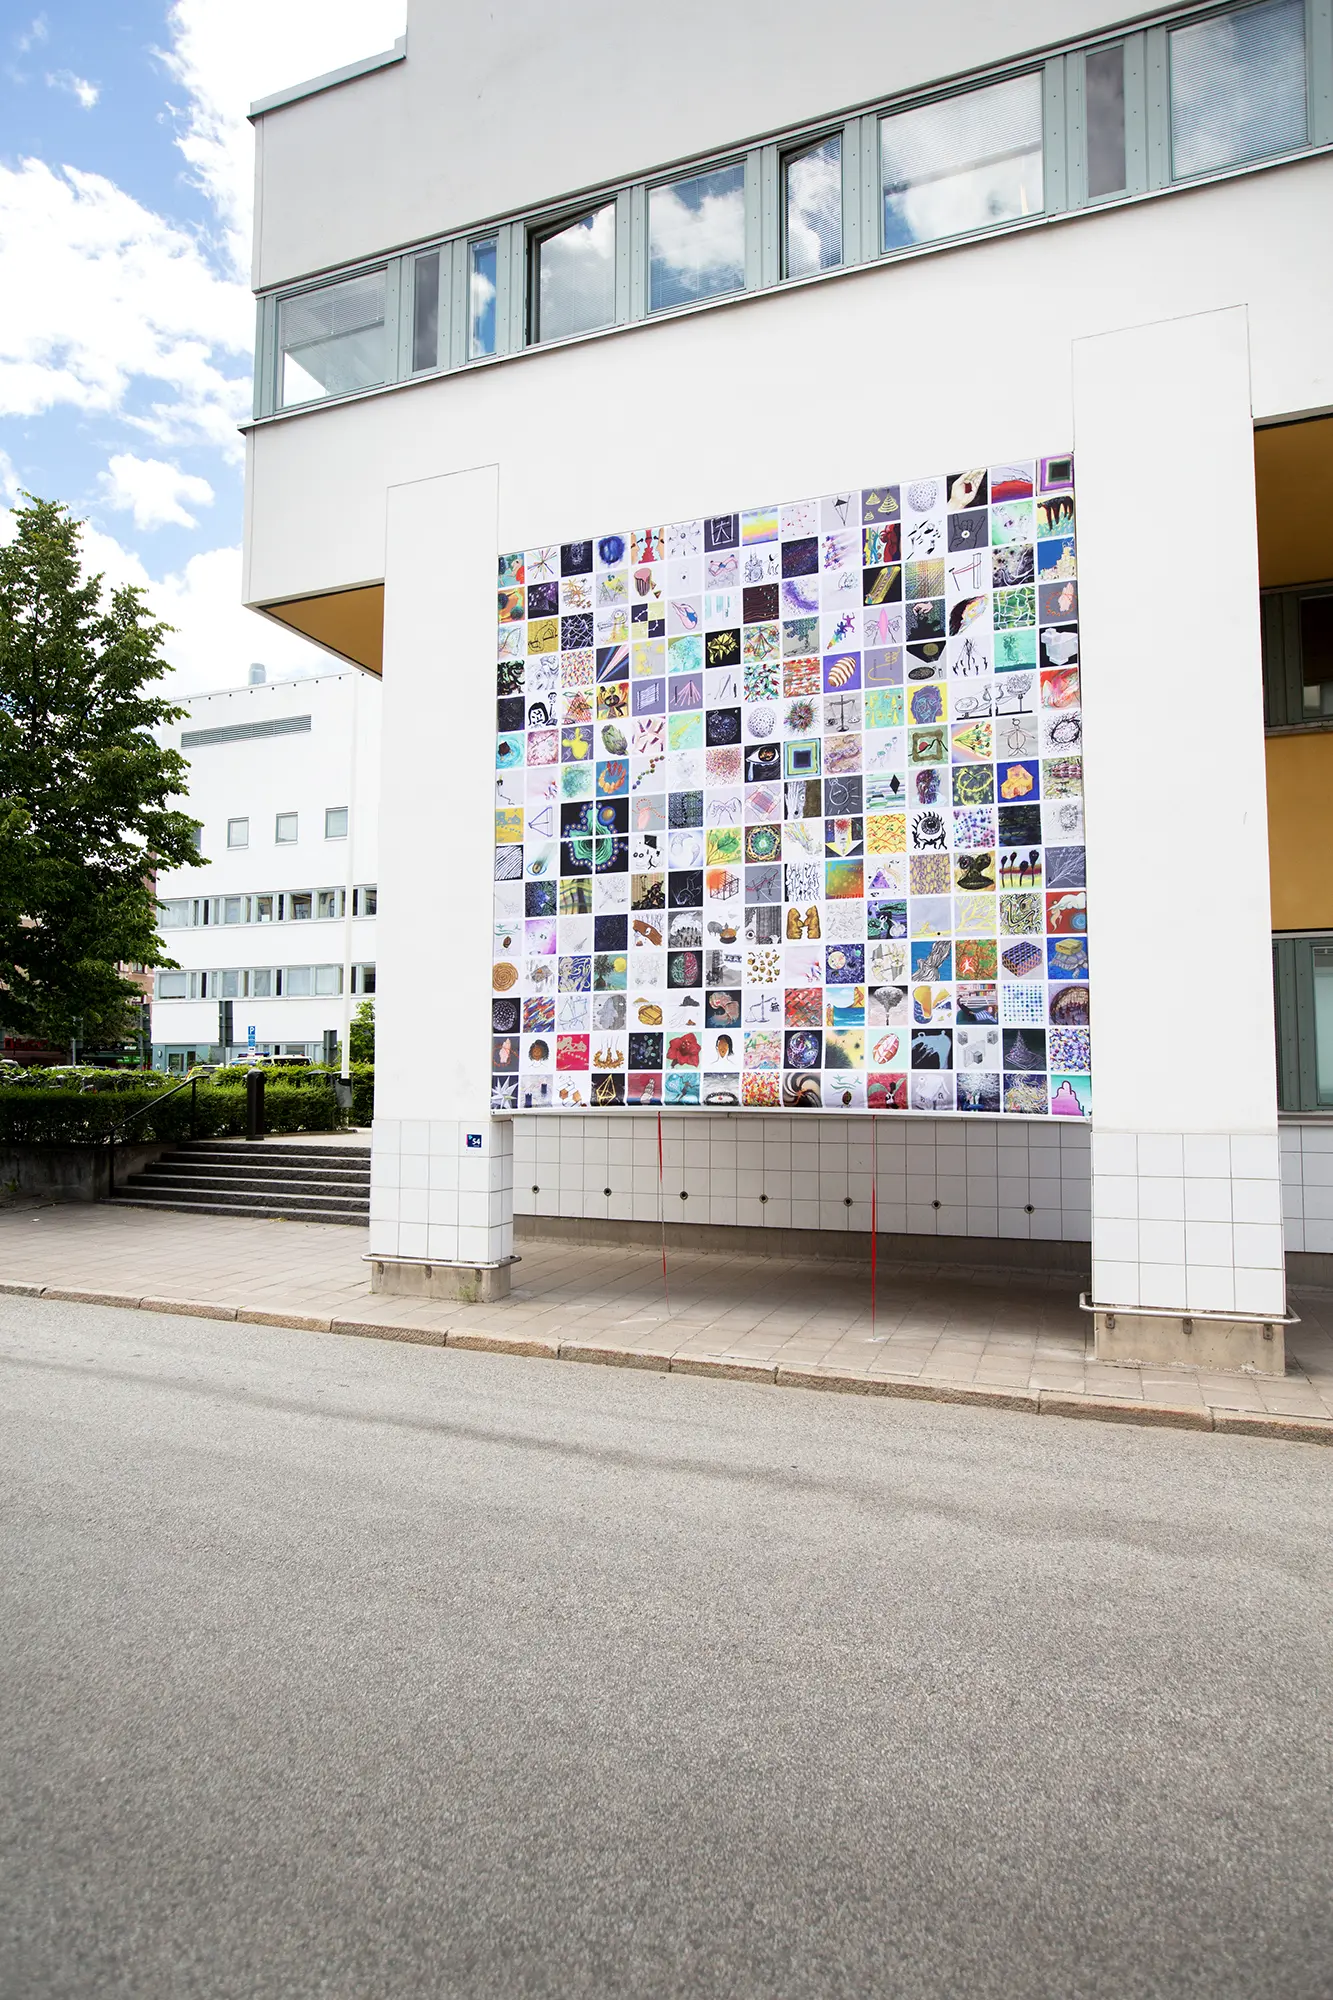 På en vit byggnad sitter en väggmålning upphängd mellan två pelare. Målningen består av en stor mängd små kvadratiska bilder i rader. De små bilderna är både föreställande och abstrakta i olika stilar och färger.